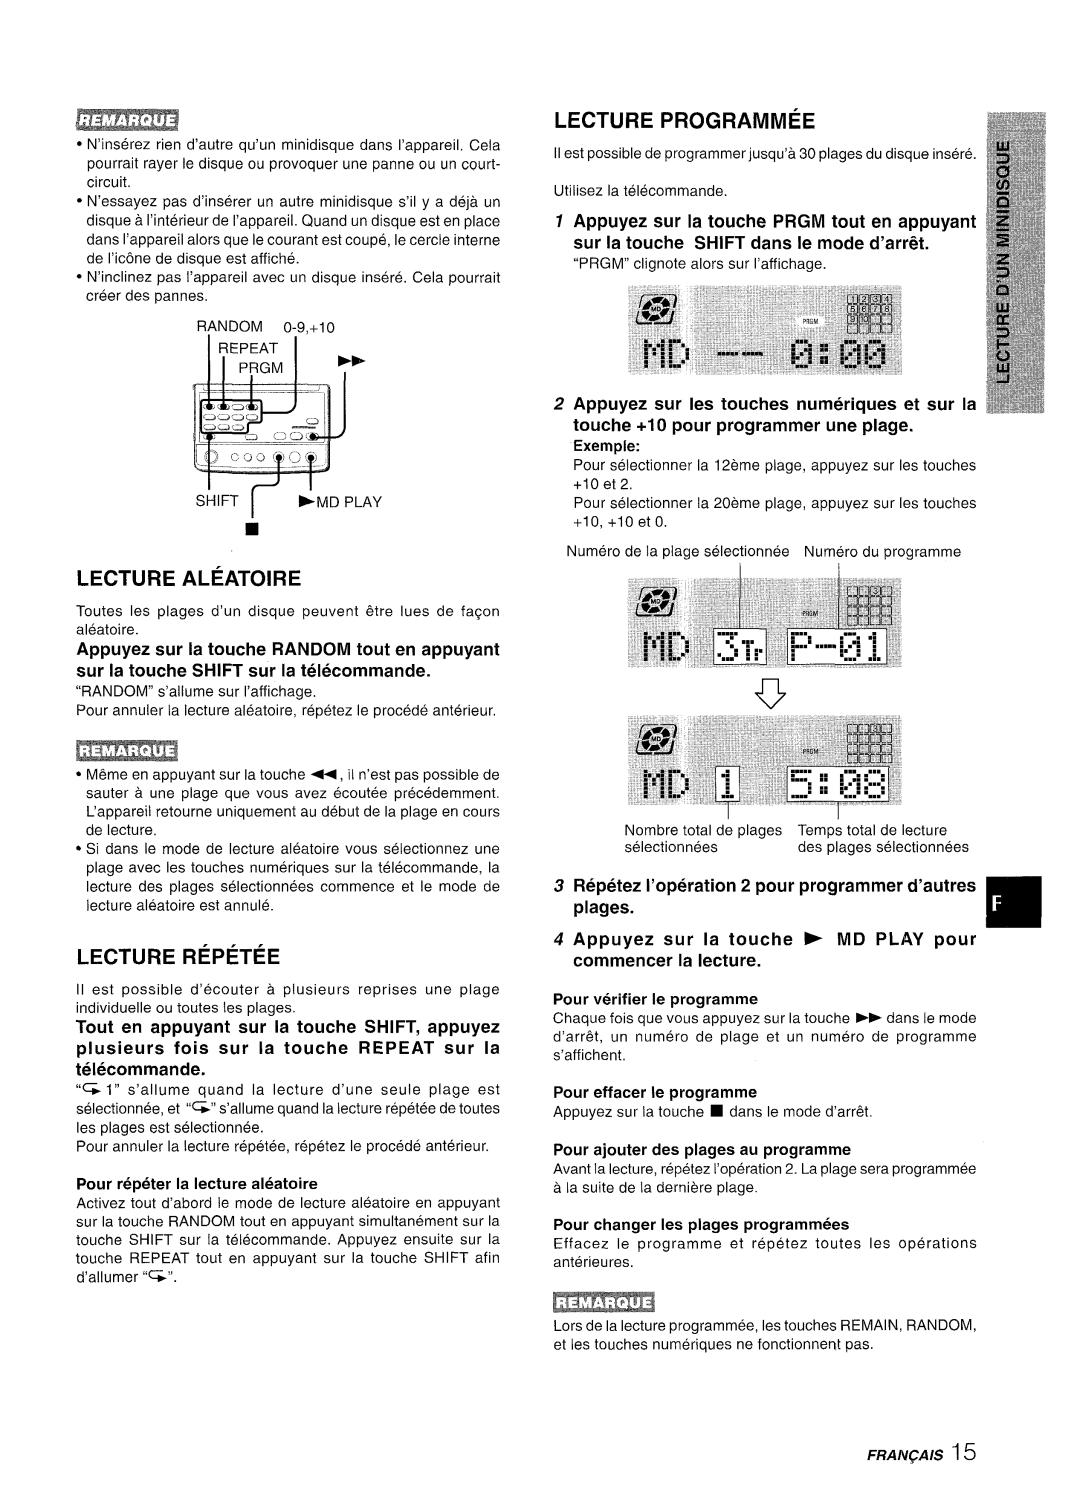 Aiwa XR-MD95 manual plusieurs fois sur la touche REPEAT sur la telecommande, Pour verifier Ie programme, Lecture Aleatoire 